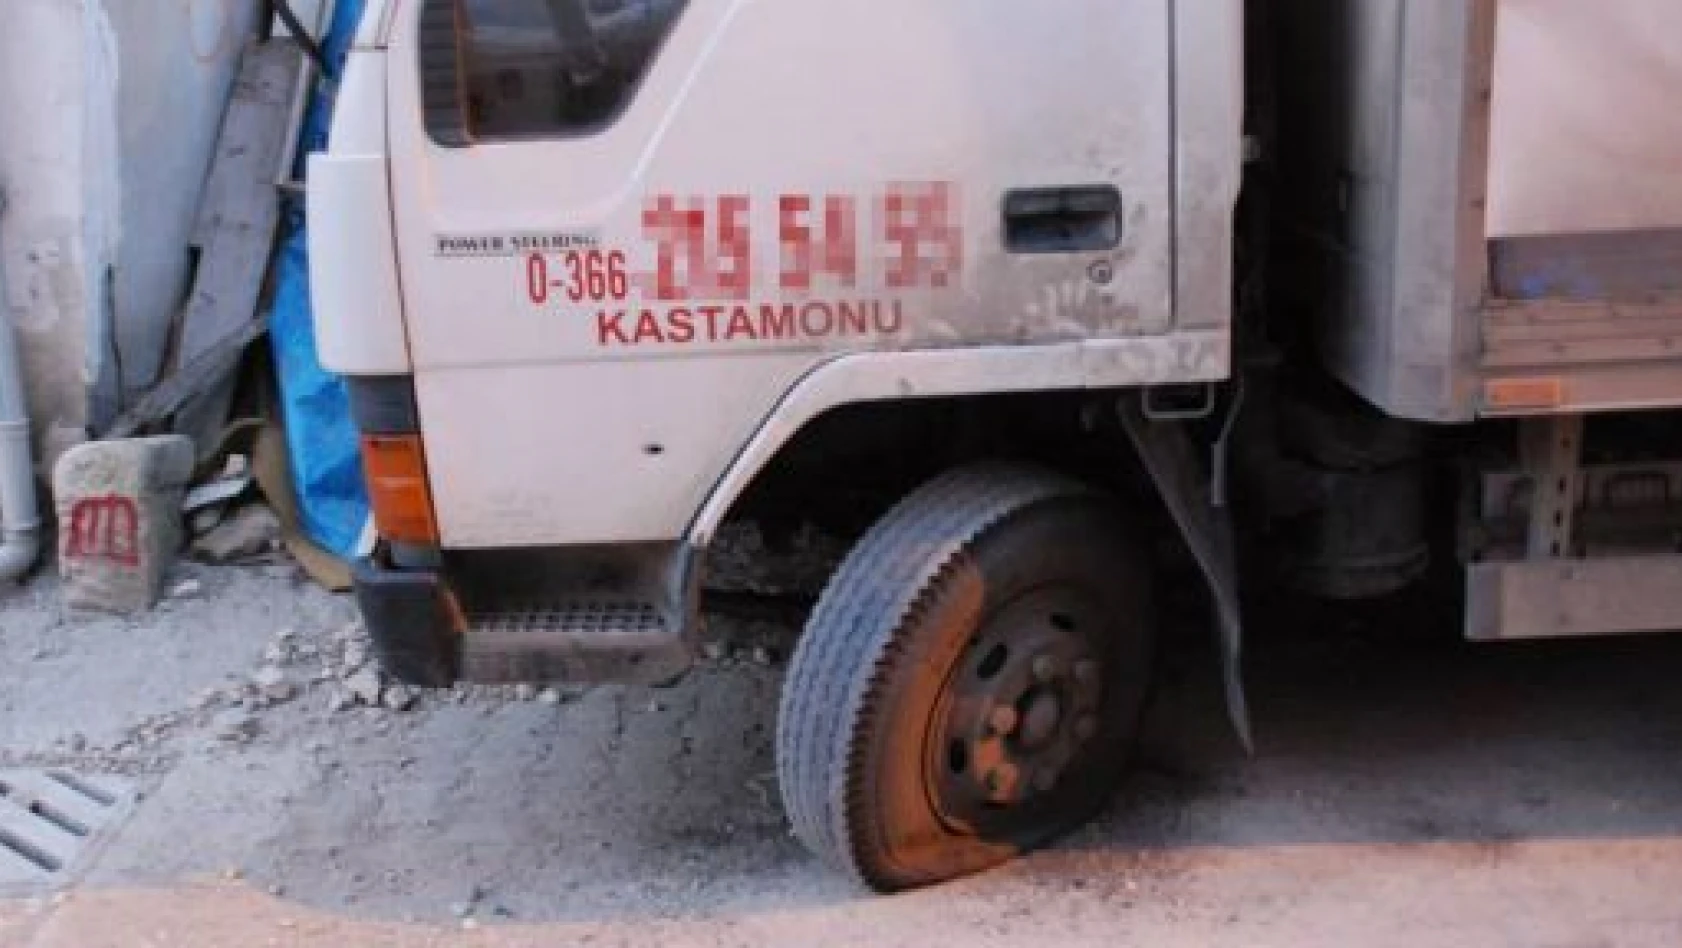 Kastamonu'da Oto Kurşunlayan Kişi Yakalandı